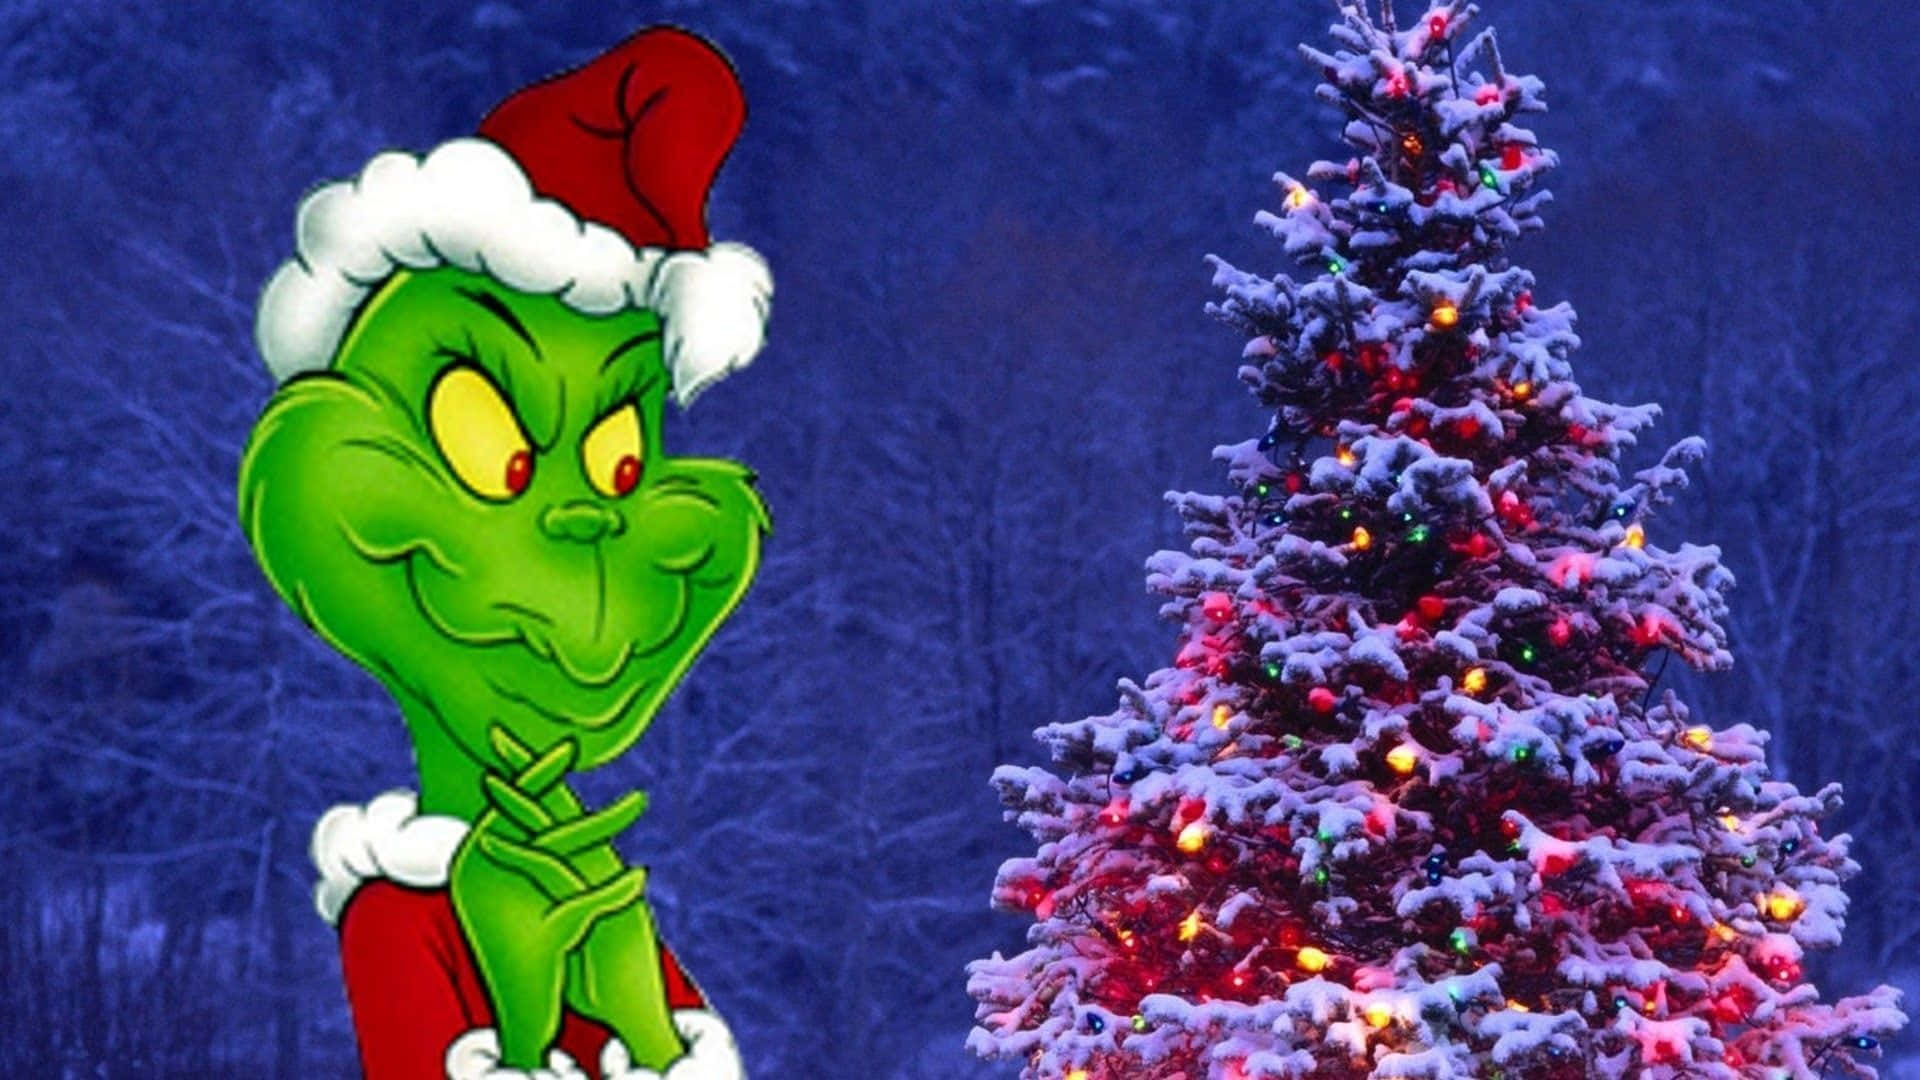 Imagende Grinch Con Árbol De Navidad.